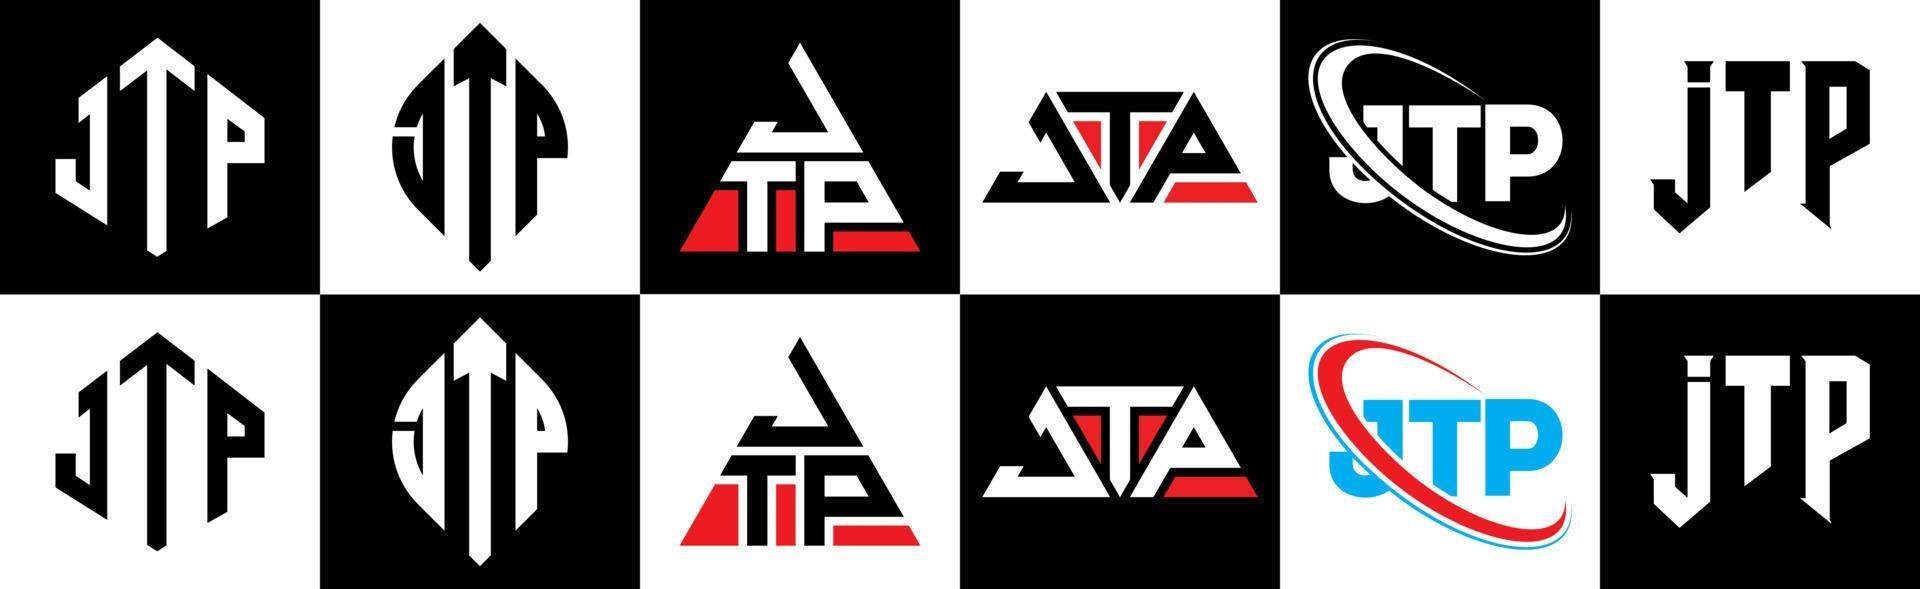 jtp-Buchstaben-Logo-Design in sechs Stilen. JTP-Polygon, Kreis, Dreieck, Sechseck, flacher und einfacher Stil mit schwarz-weißem Buchstabenlogo in einer Zeichenfläche. jtp minimalistisches und klassisches Logo vektor